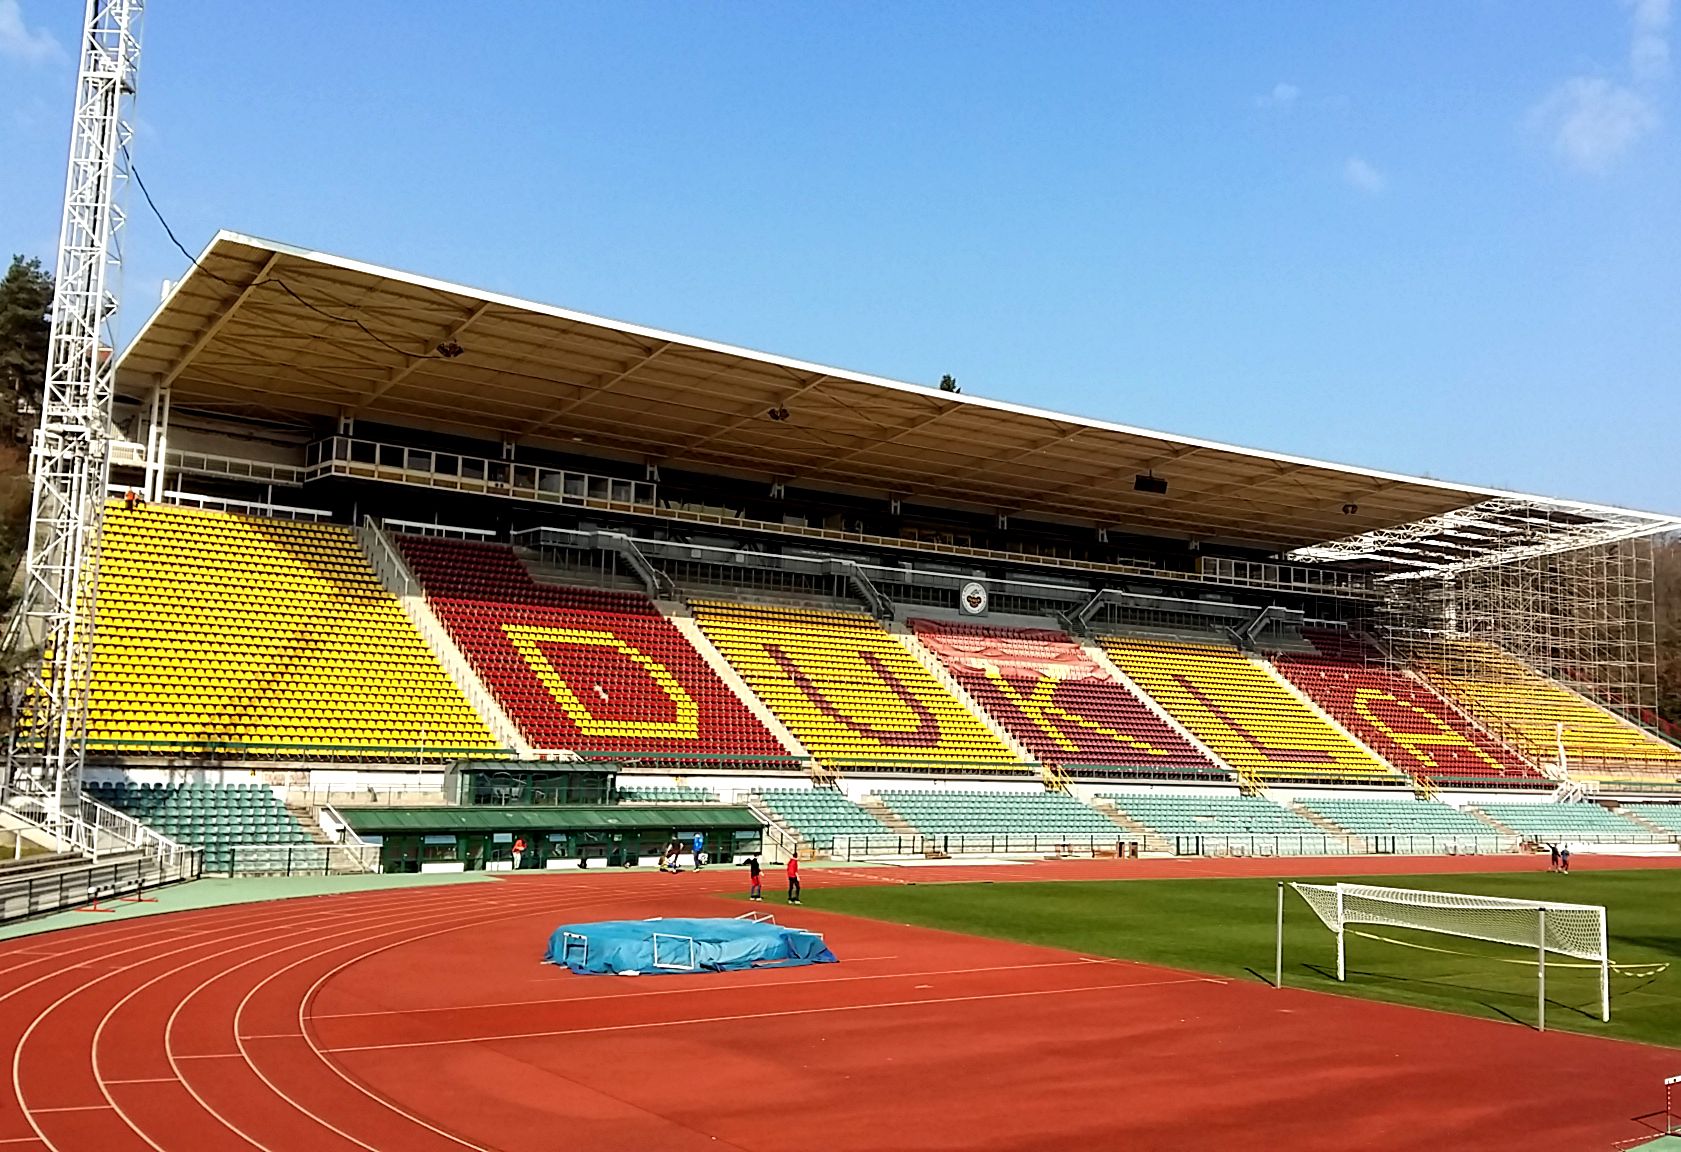 Stadion Juliska rekonstrukce tribuny - Byggearbejde